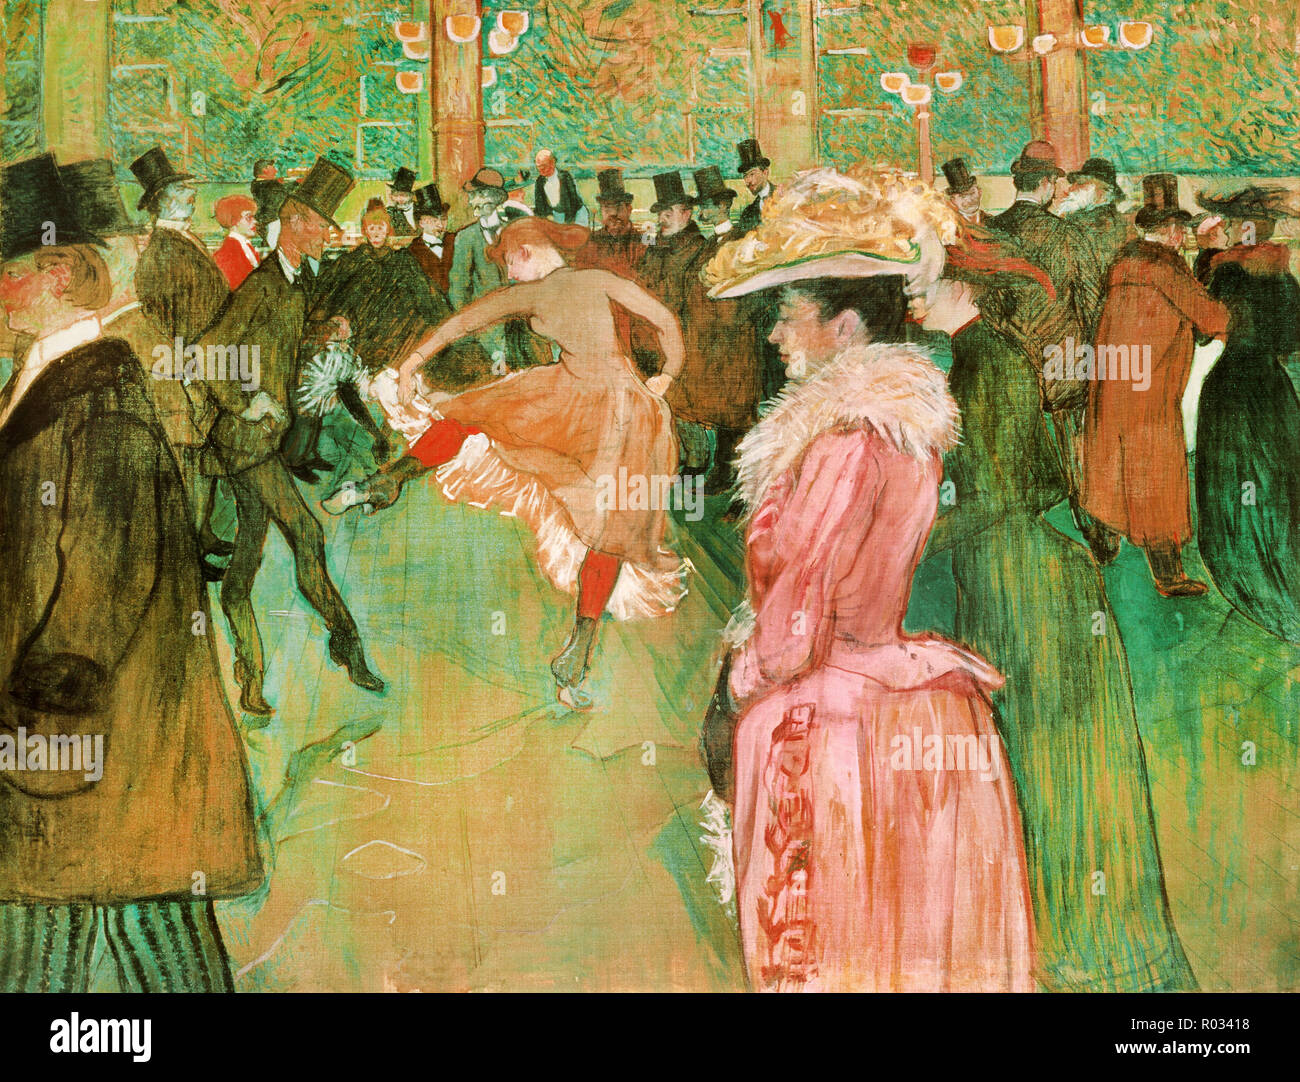 Henri de Toulouse-Lautrec, au Moulin Rouge, la danse, 1890, huile sur toile, Philadelphia Museum of Art, USA. Banque D'Images